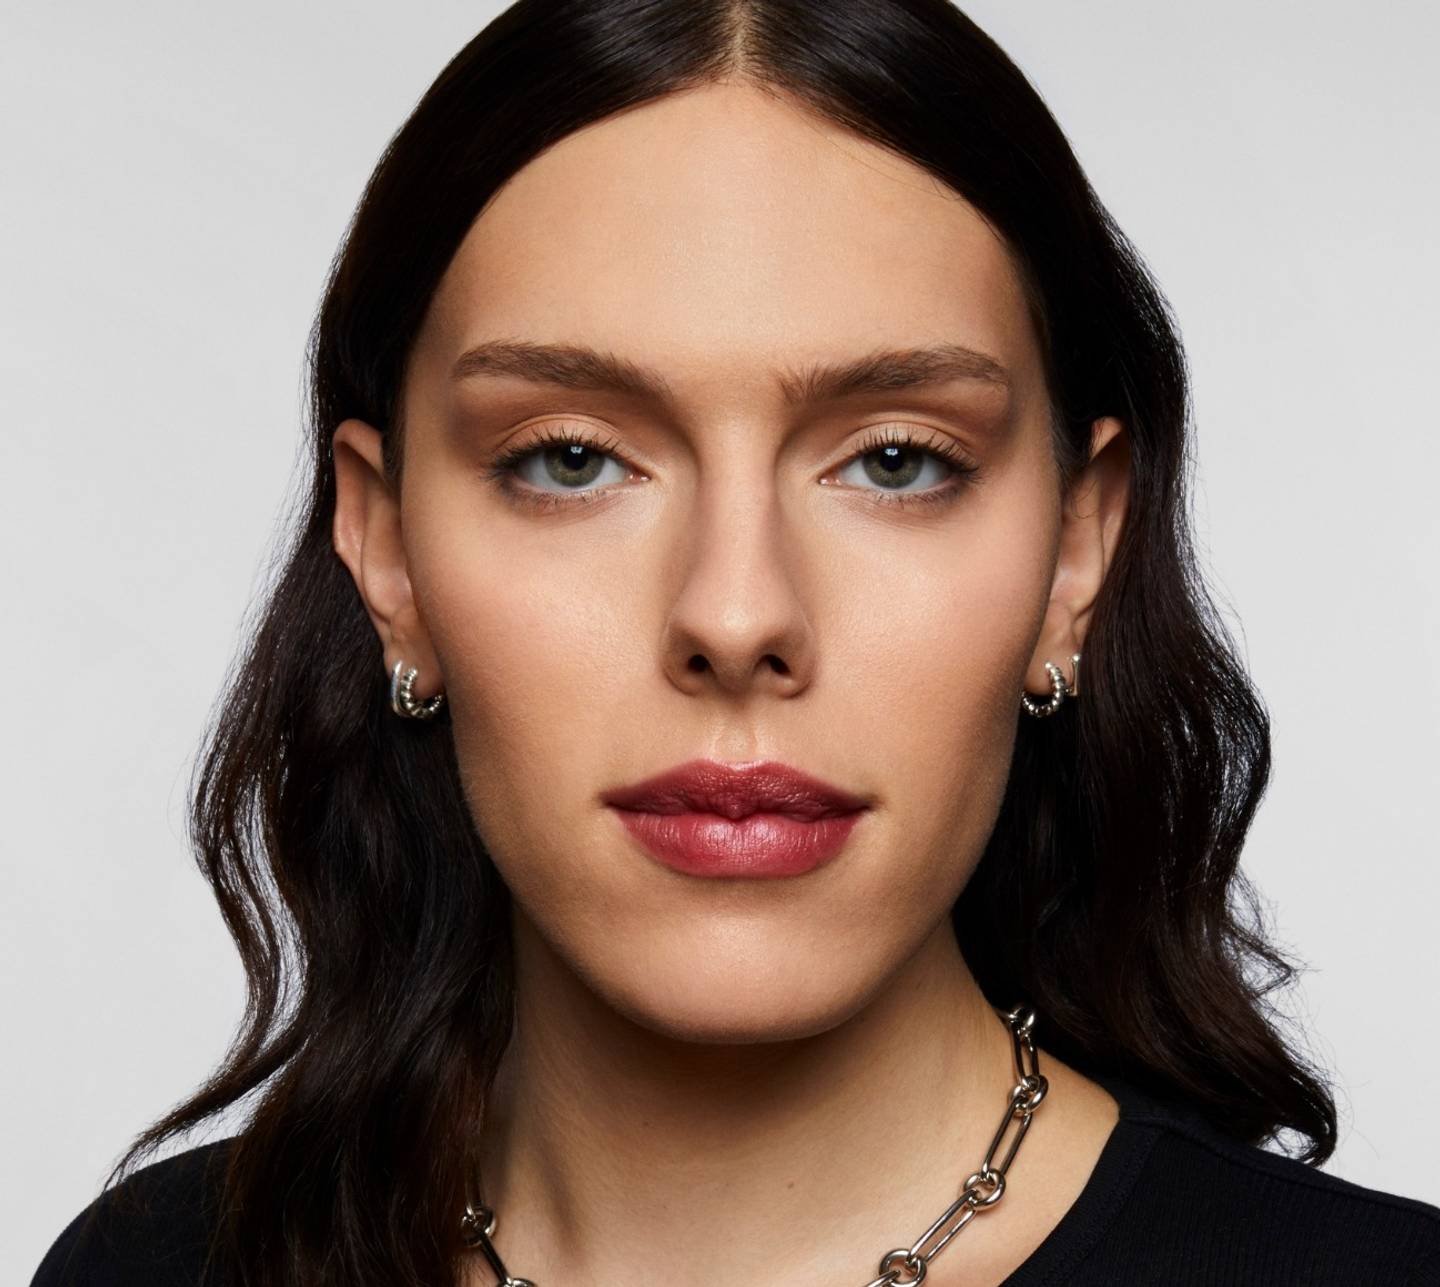 Model wearing matte makeup